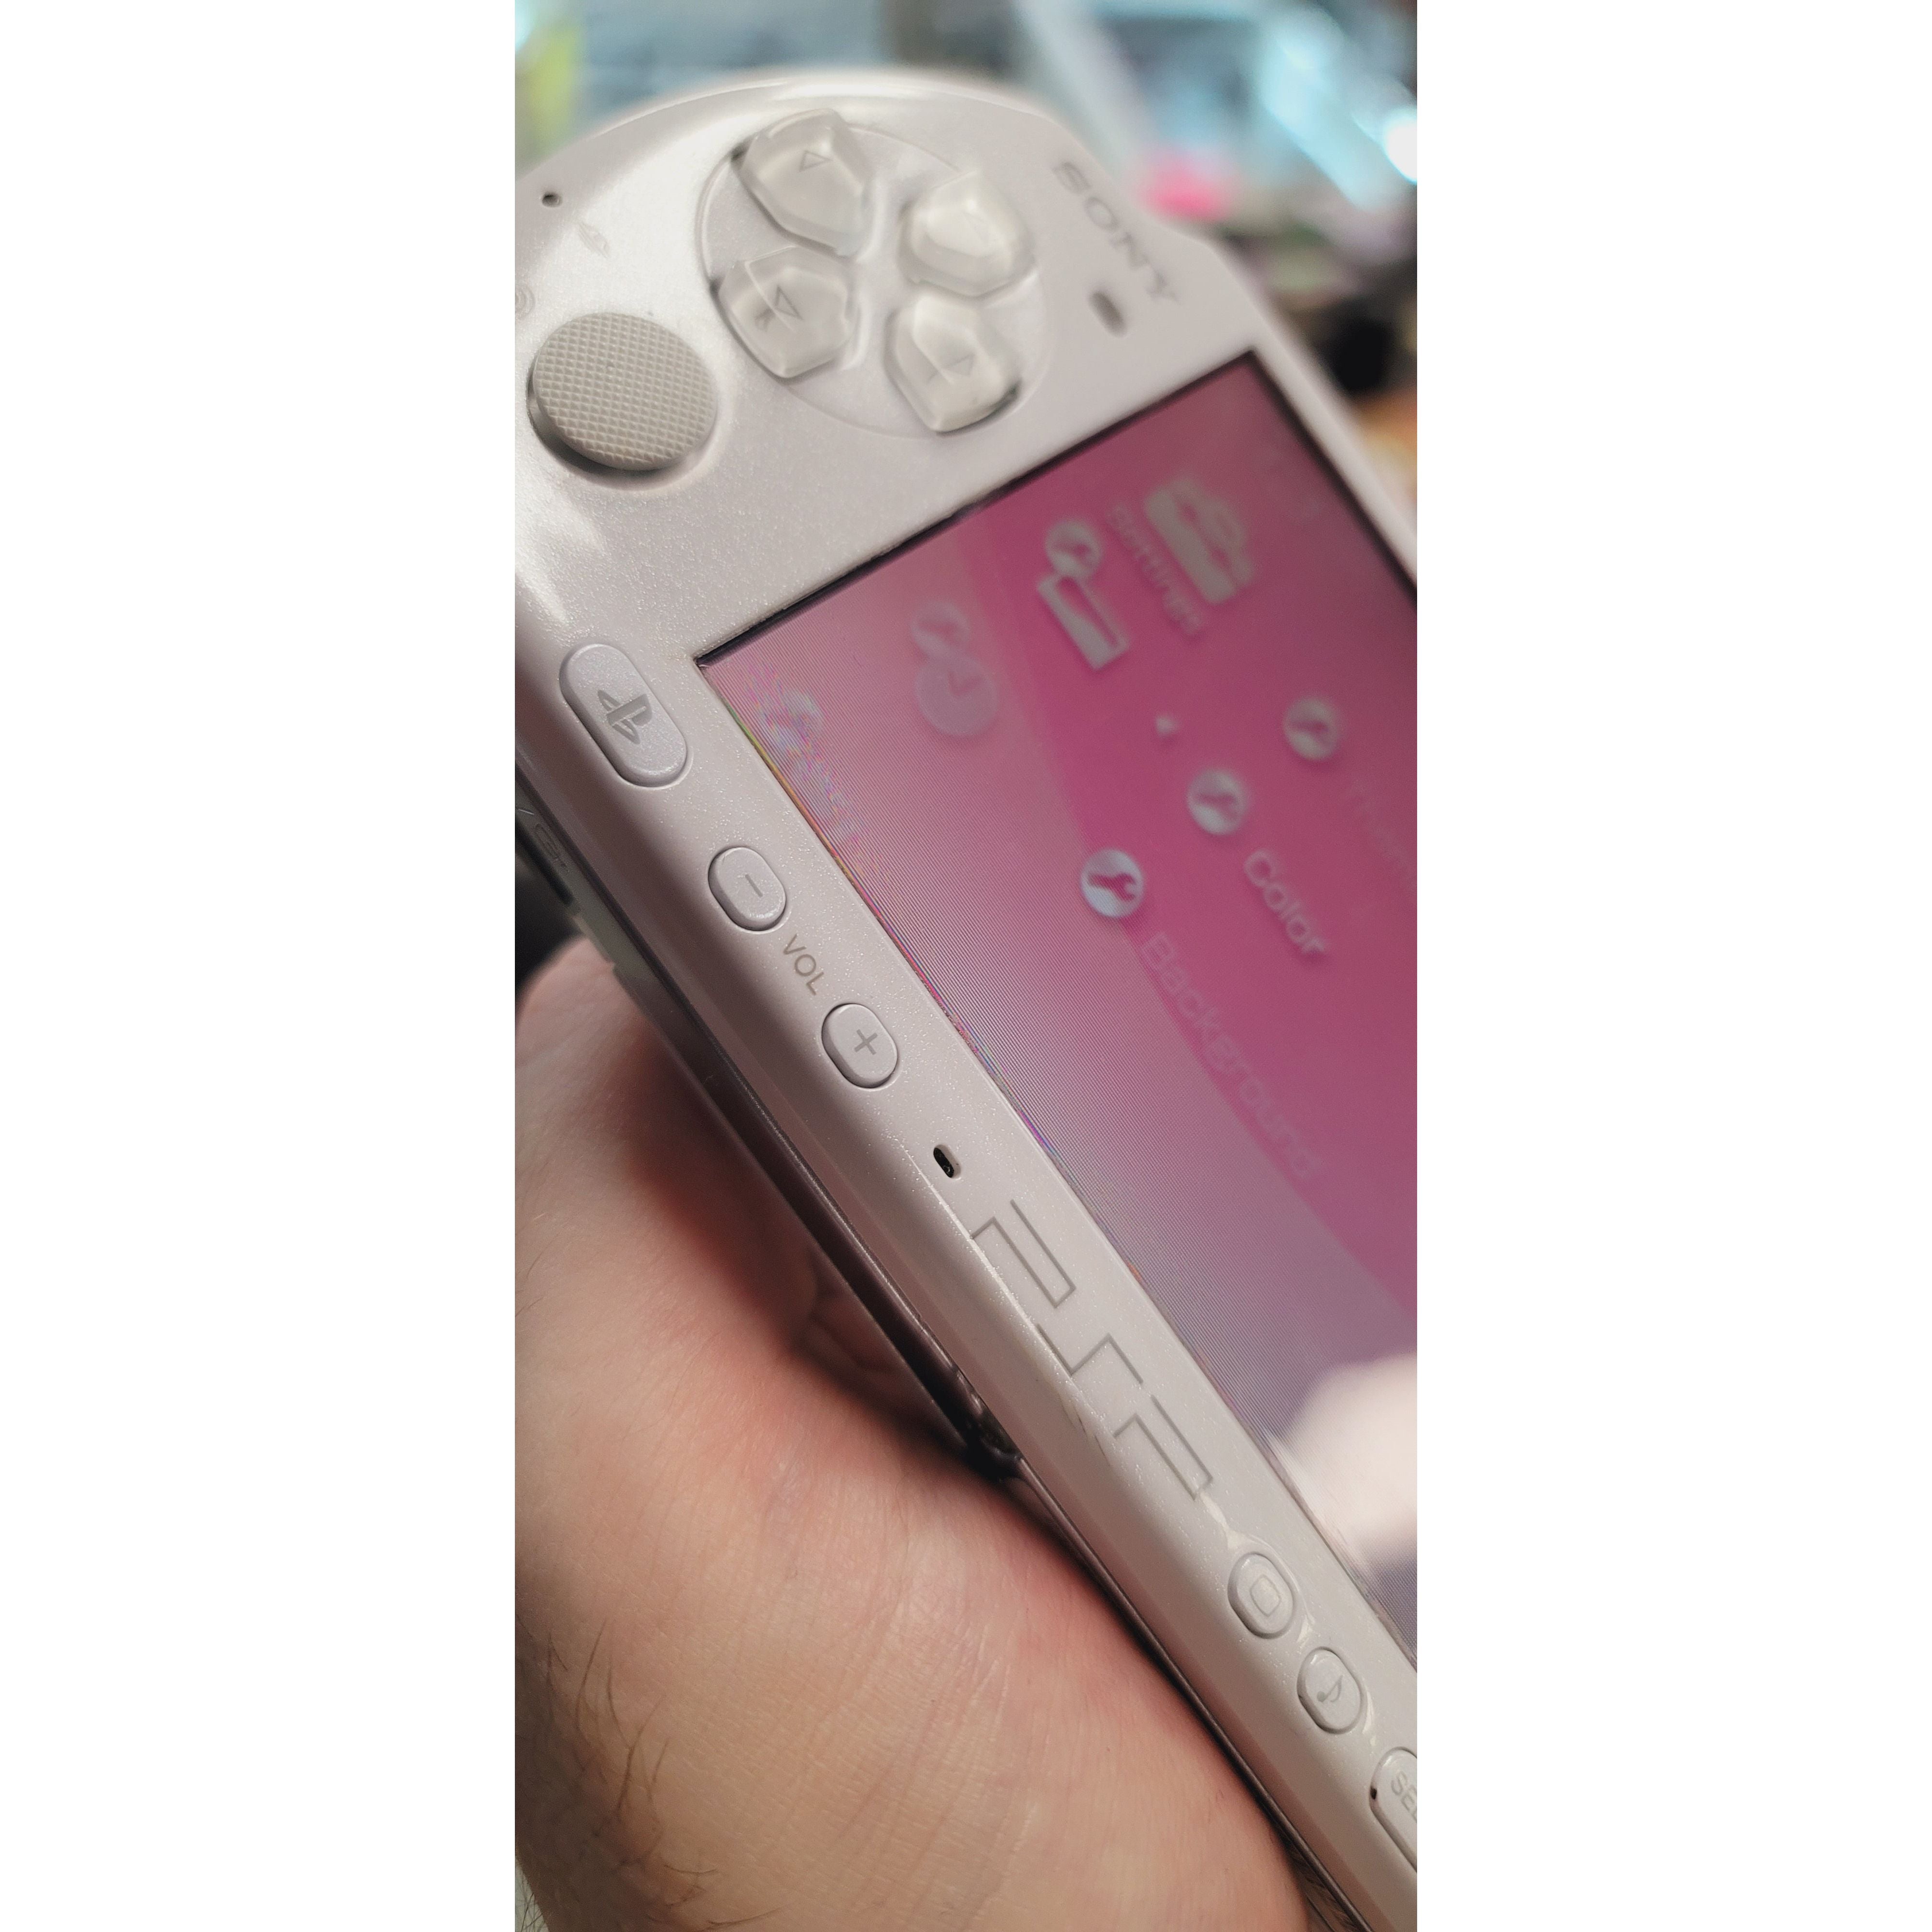 Système PSP - Modèle 3000 (Blanc nacré / Dommages mineurs à l'écran)